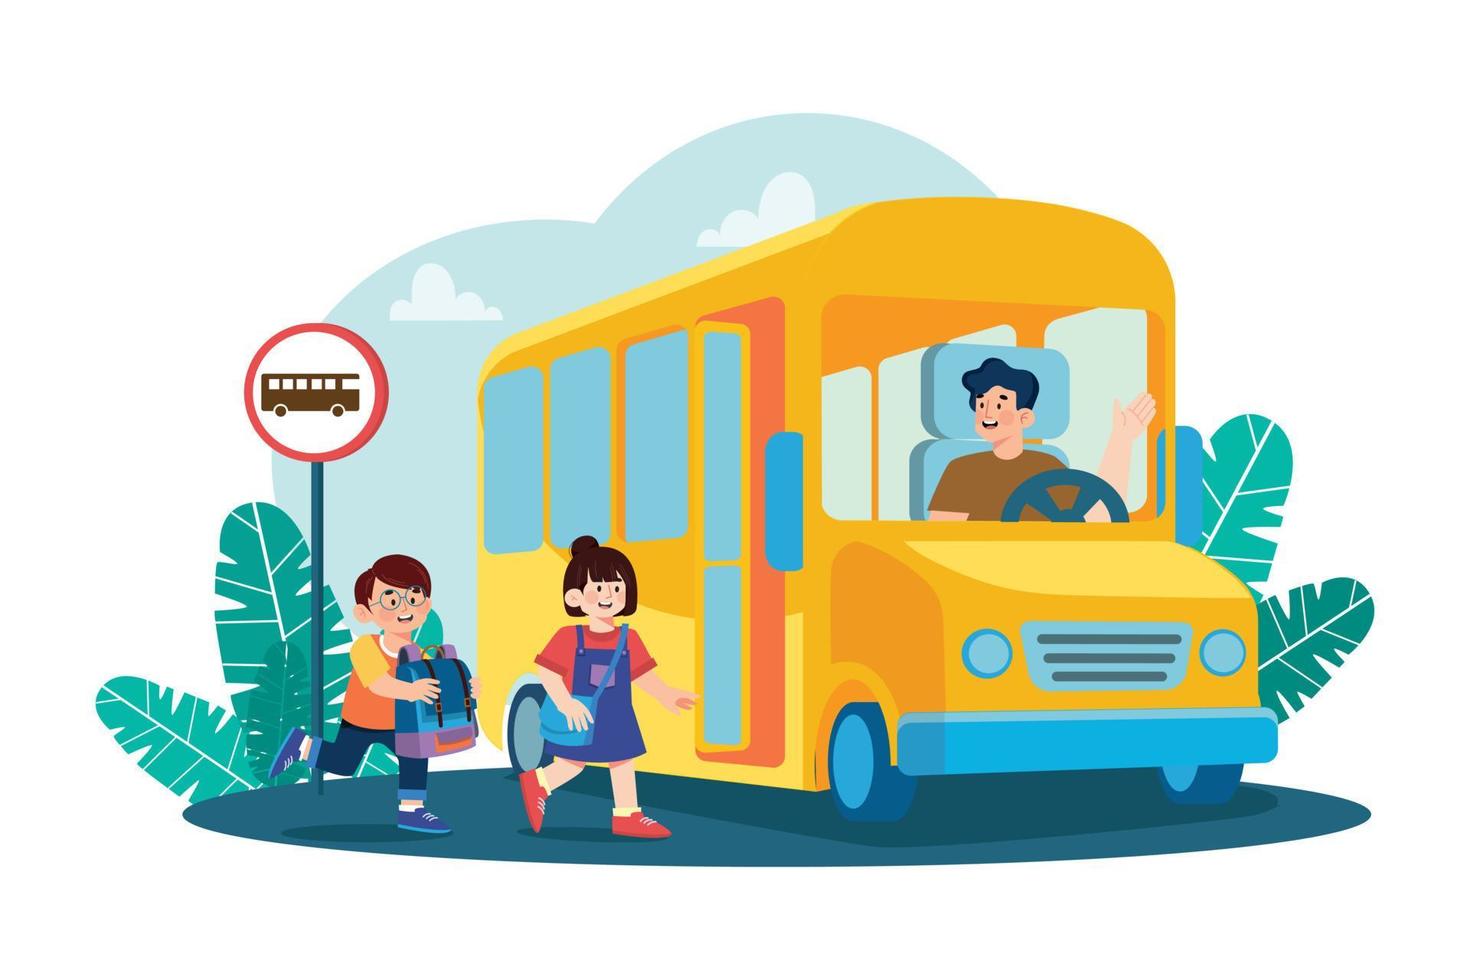 les élèves vont à l'école par le concept d'illustration d'autobus scolaire sur fond blanc vecteur